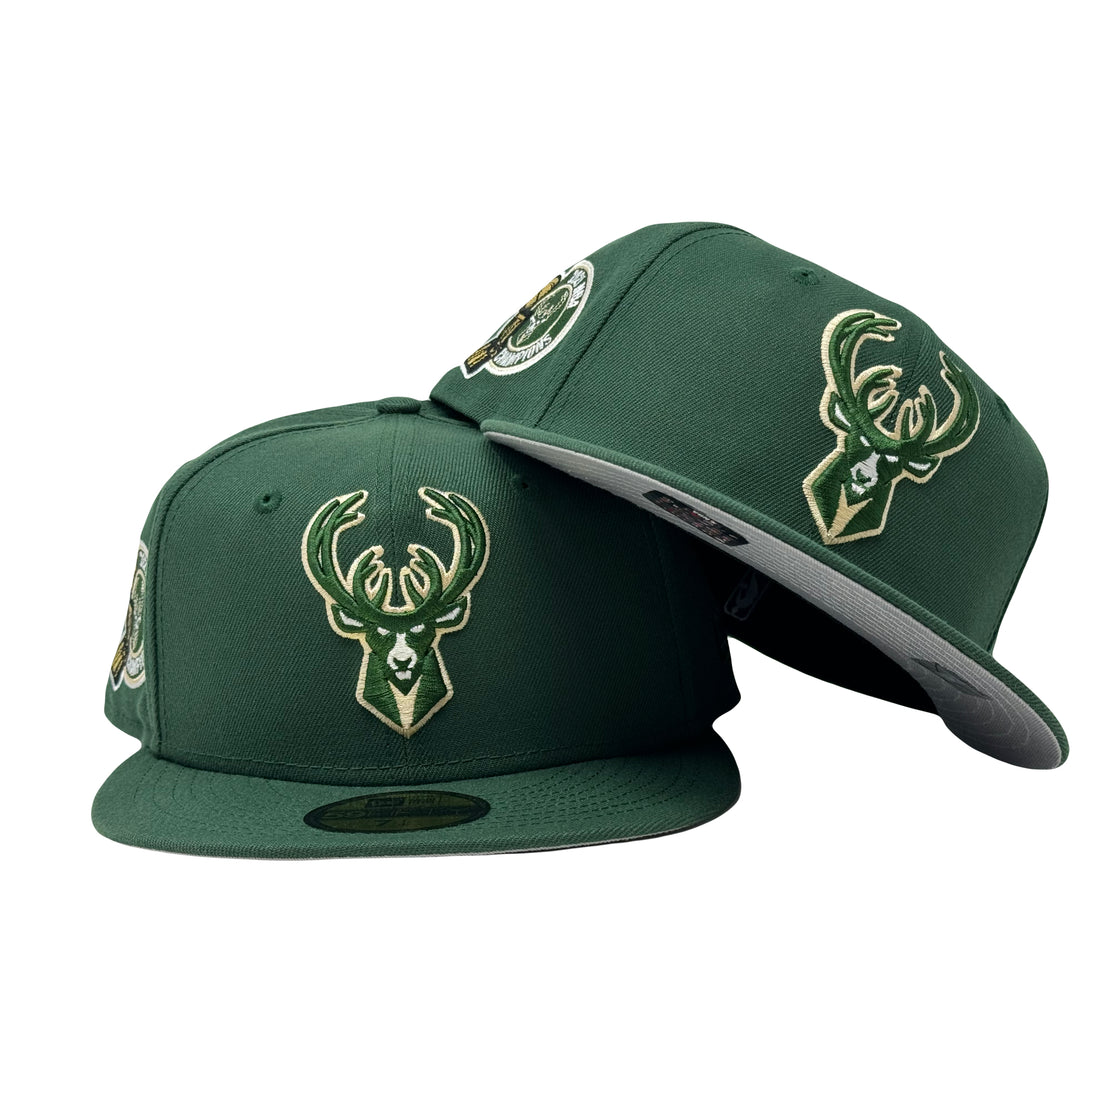 Milwaukee Bucks 2021 NBA Champions 5950 New Era Fitted Hat Dark Green